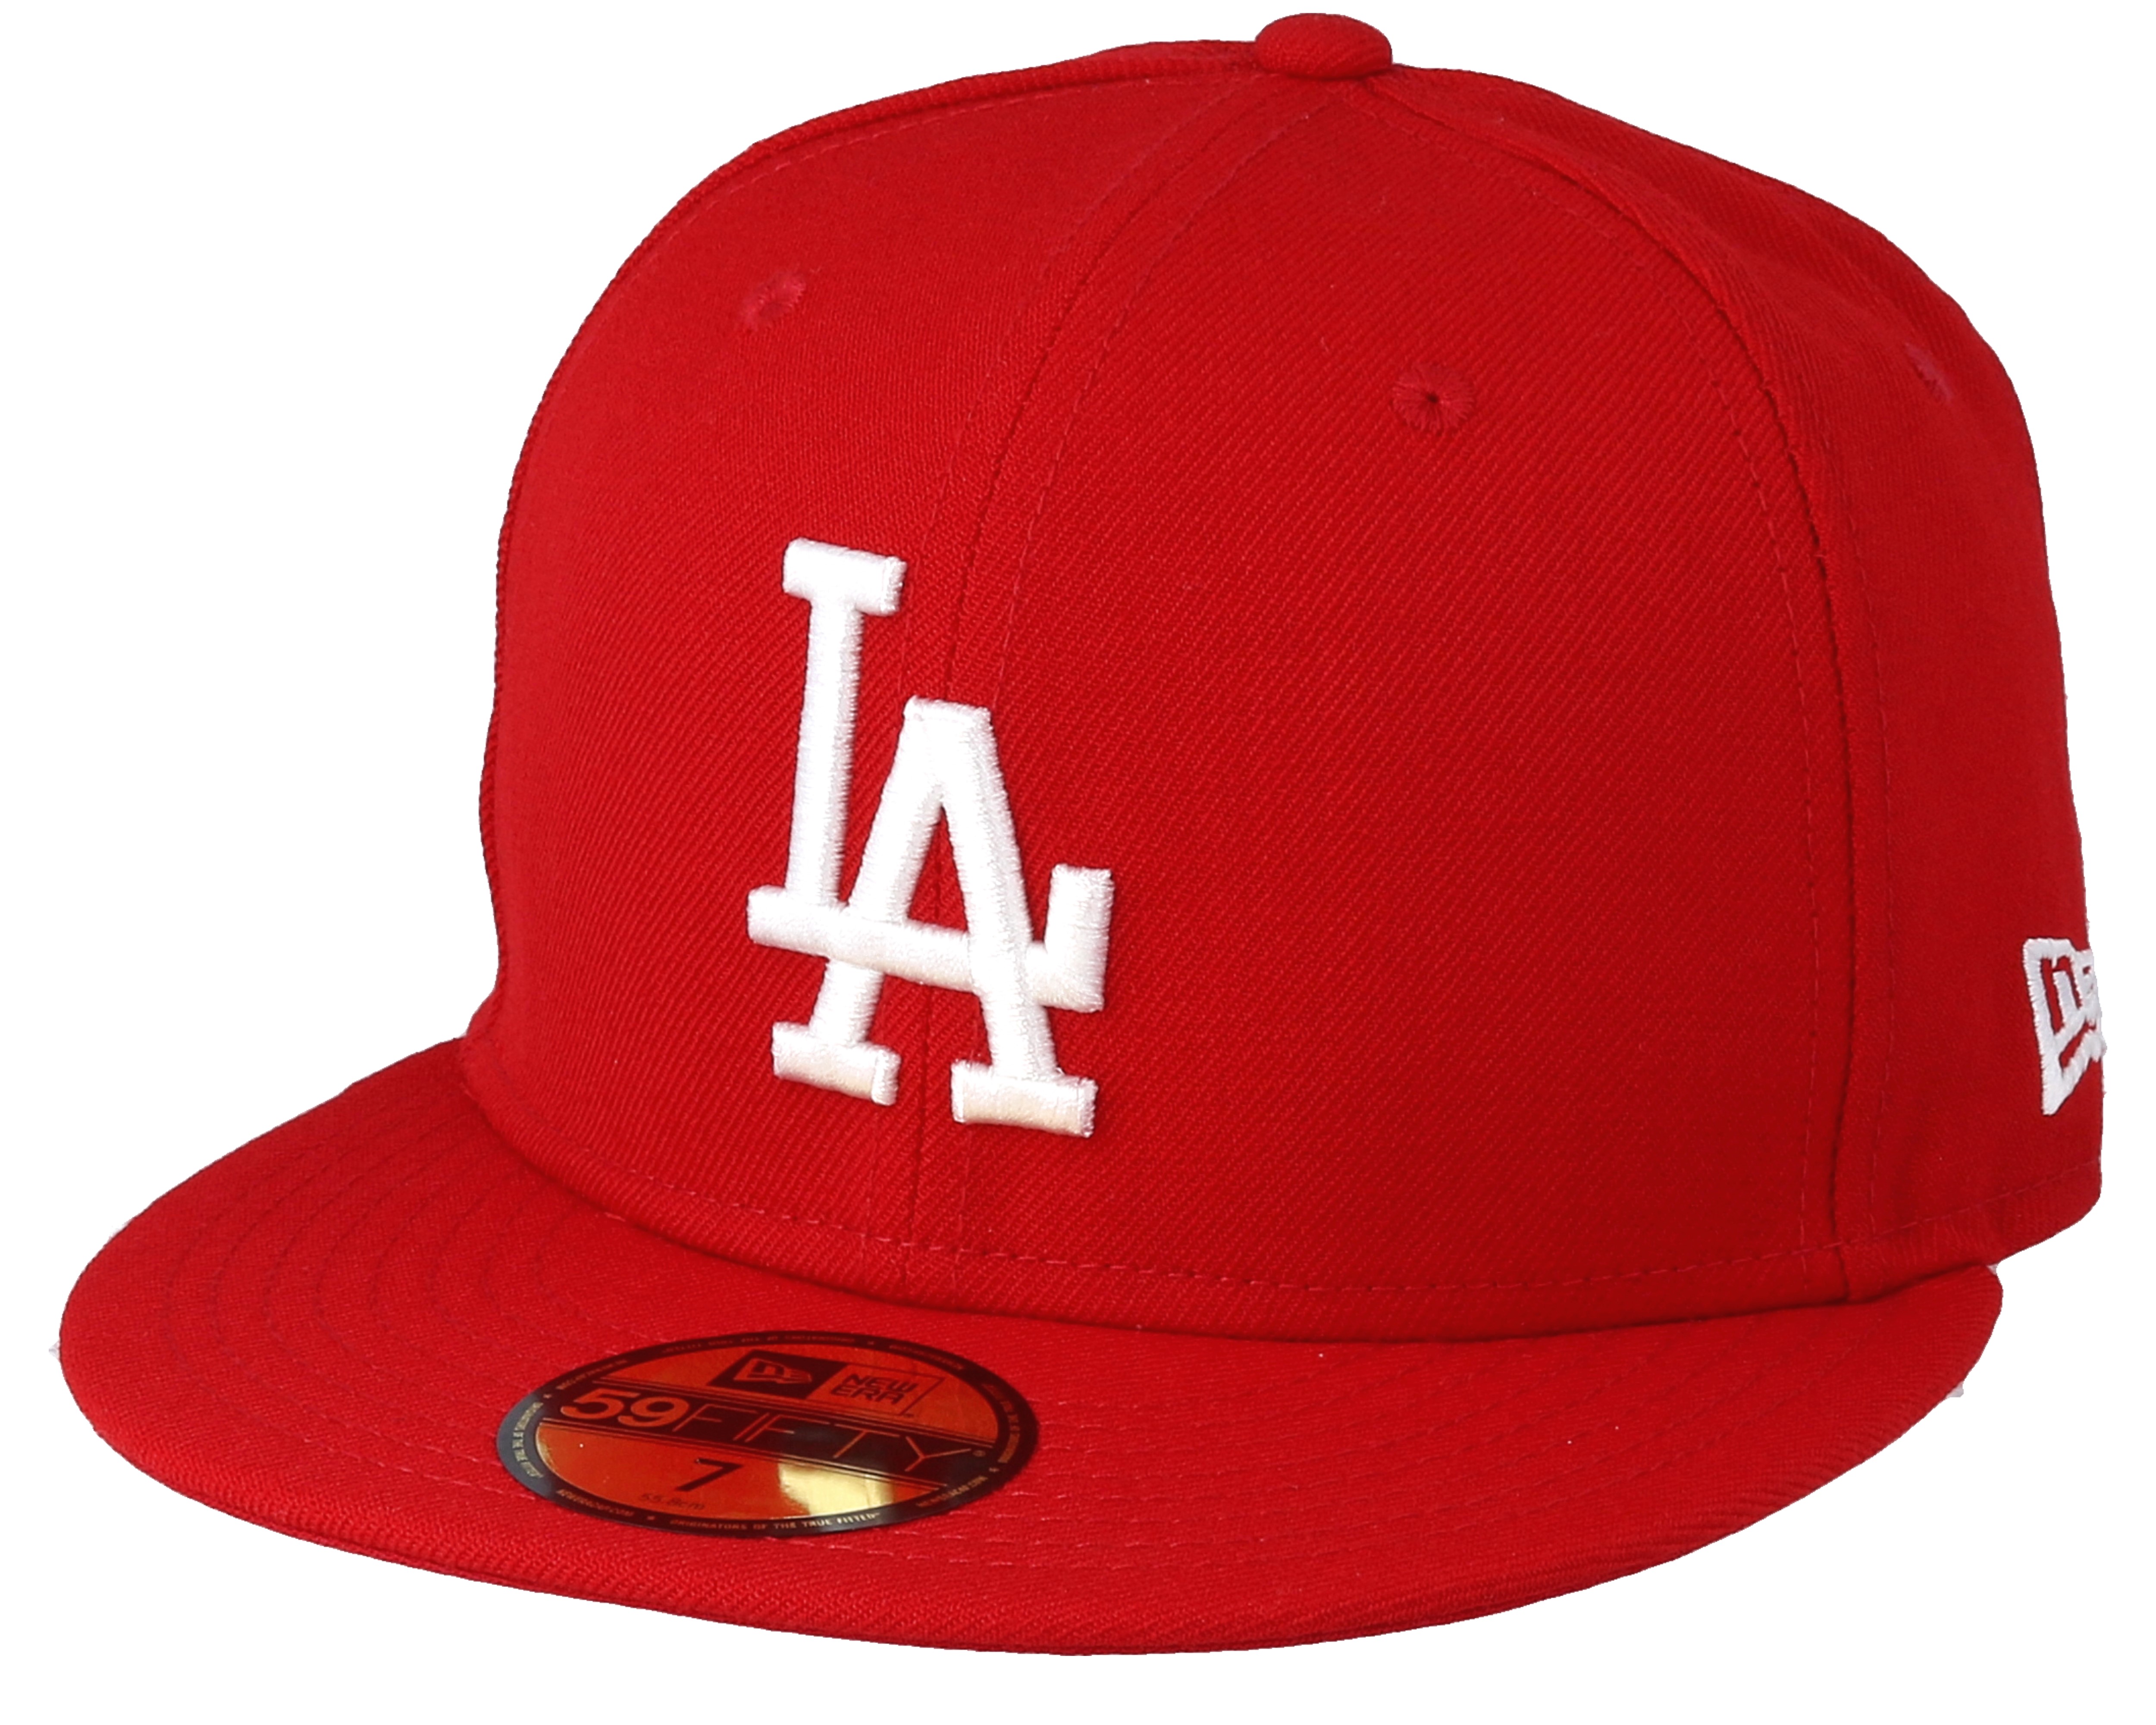 LA Dodgers MLB 59fifty Scarlet - New Era cap - Hatstore.co.in